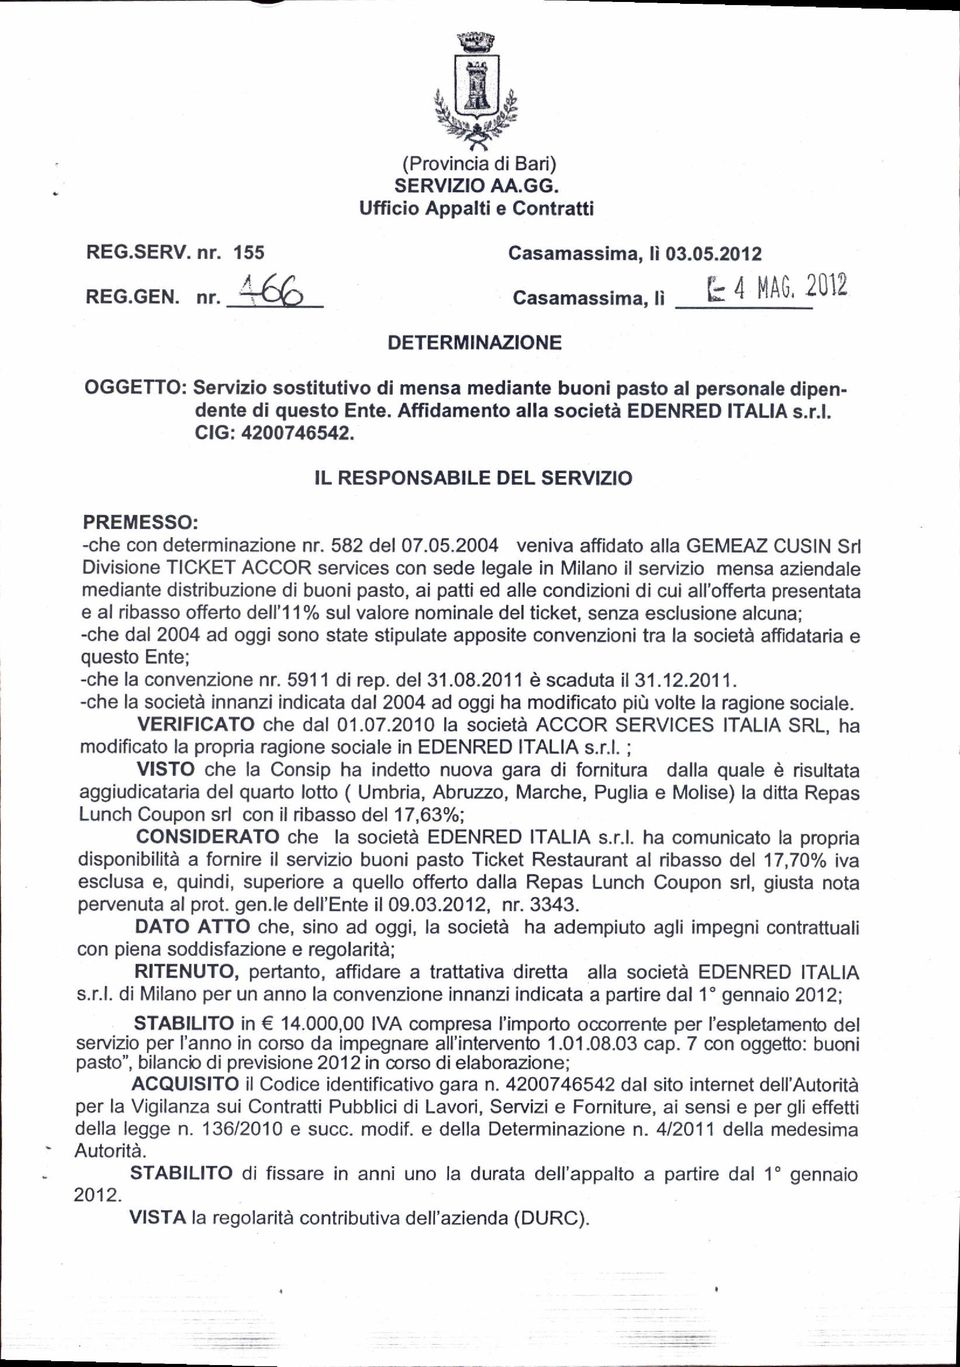 Affidamento alla società EDENRED ITALIA s.r.l. clg.4200746542. IL RESPONSABILE DEL SERVIZIO PREMESSO: -che con determinazione nr. 582 del 07.05.